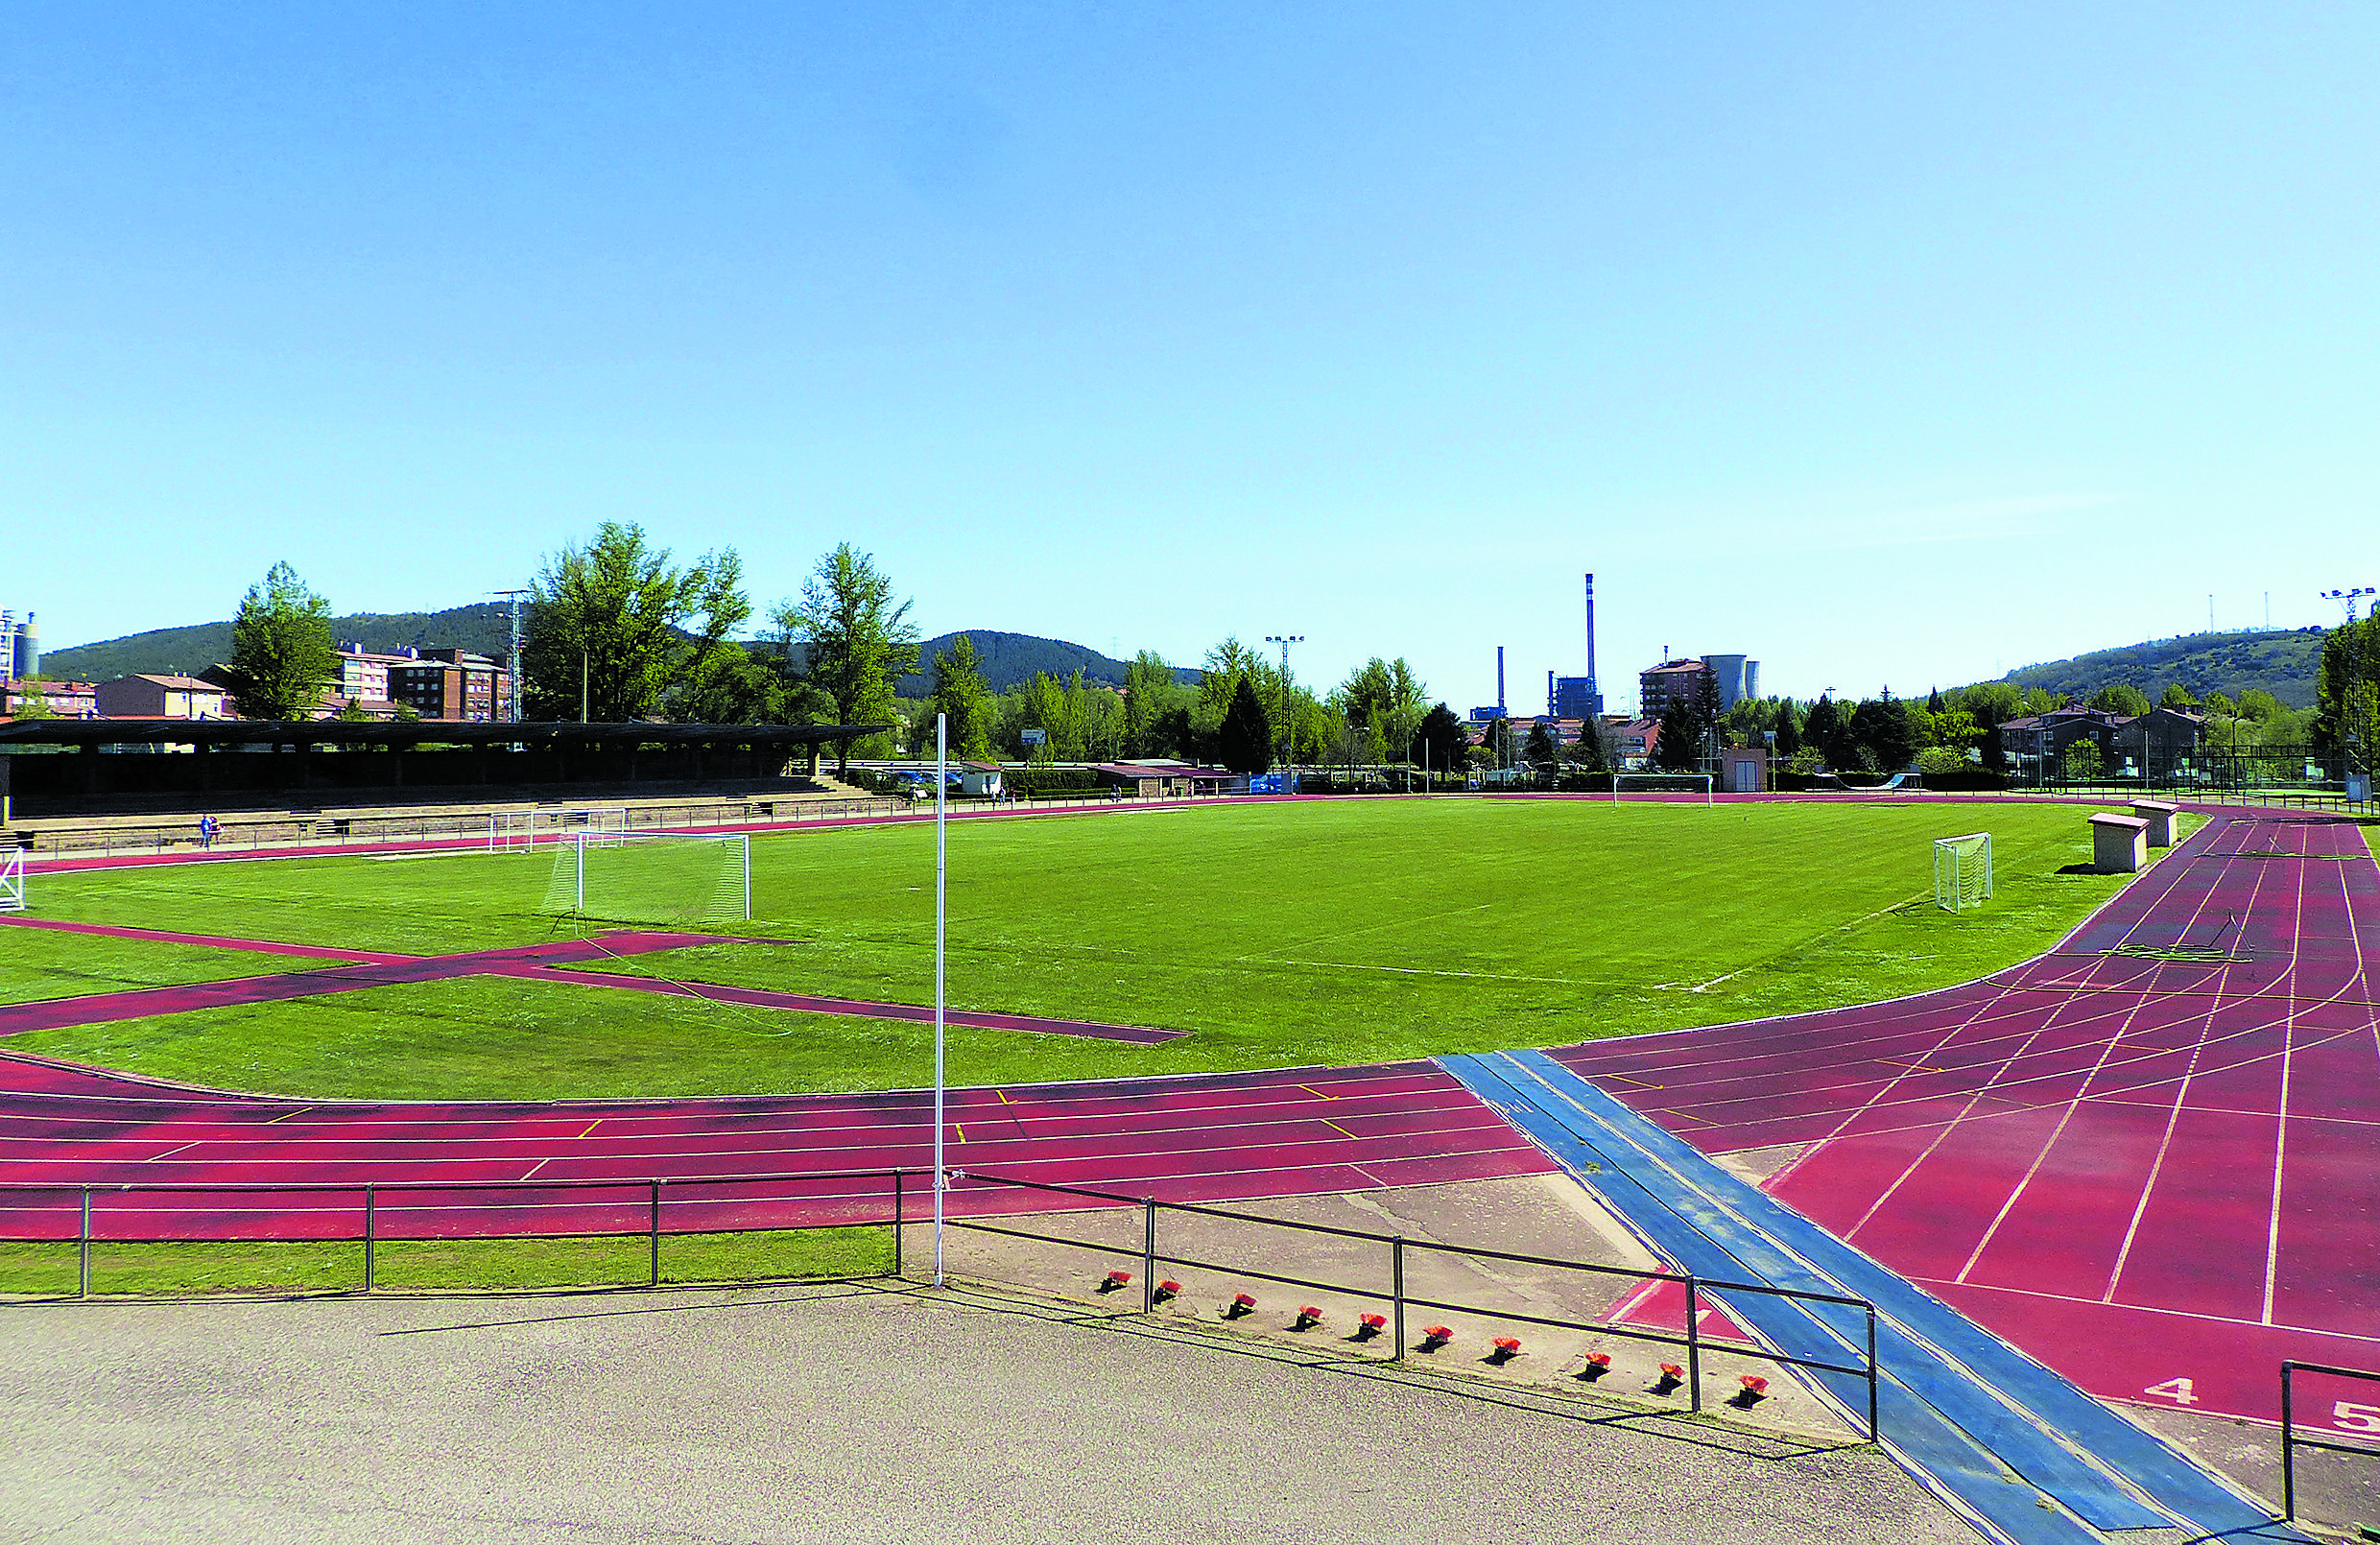 Se mejorarán instalaciones deportivas ya existentes y se crearán de nuevos espacios. | L.N.C.